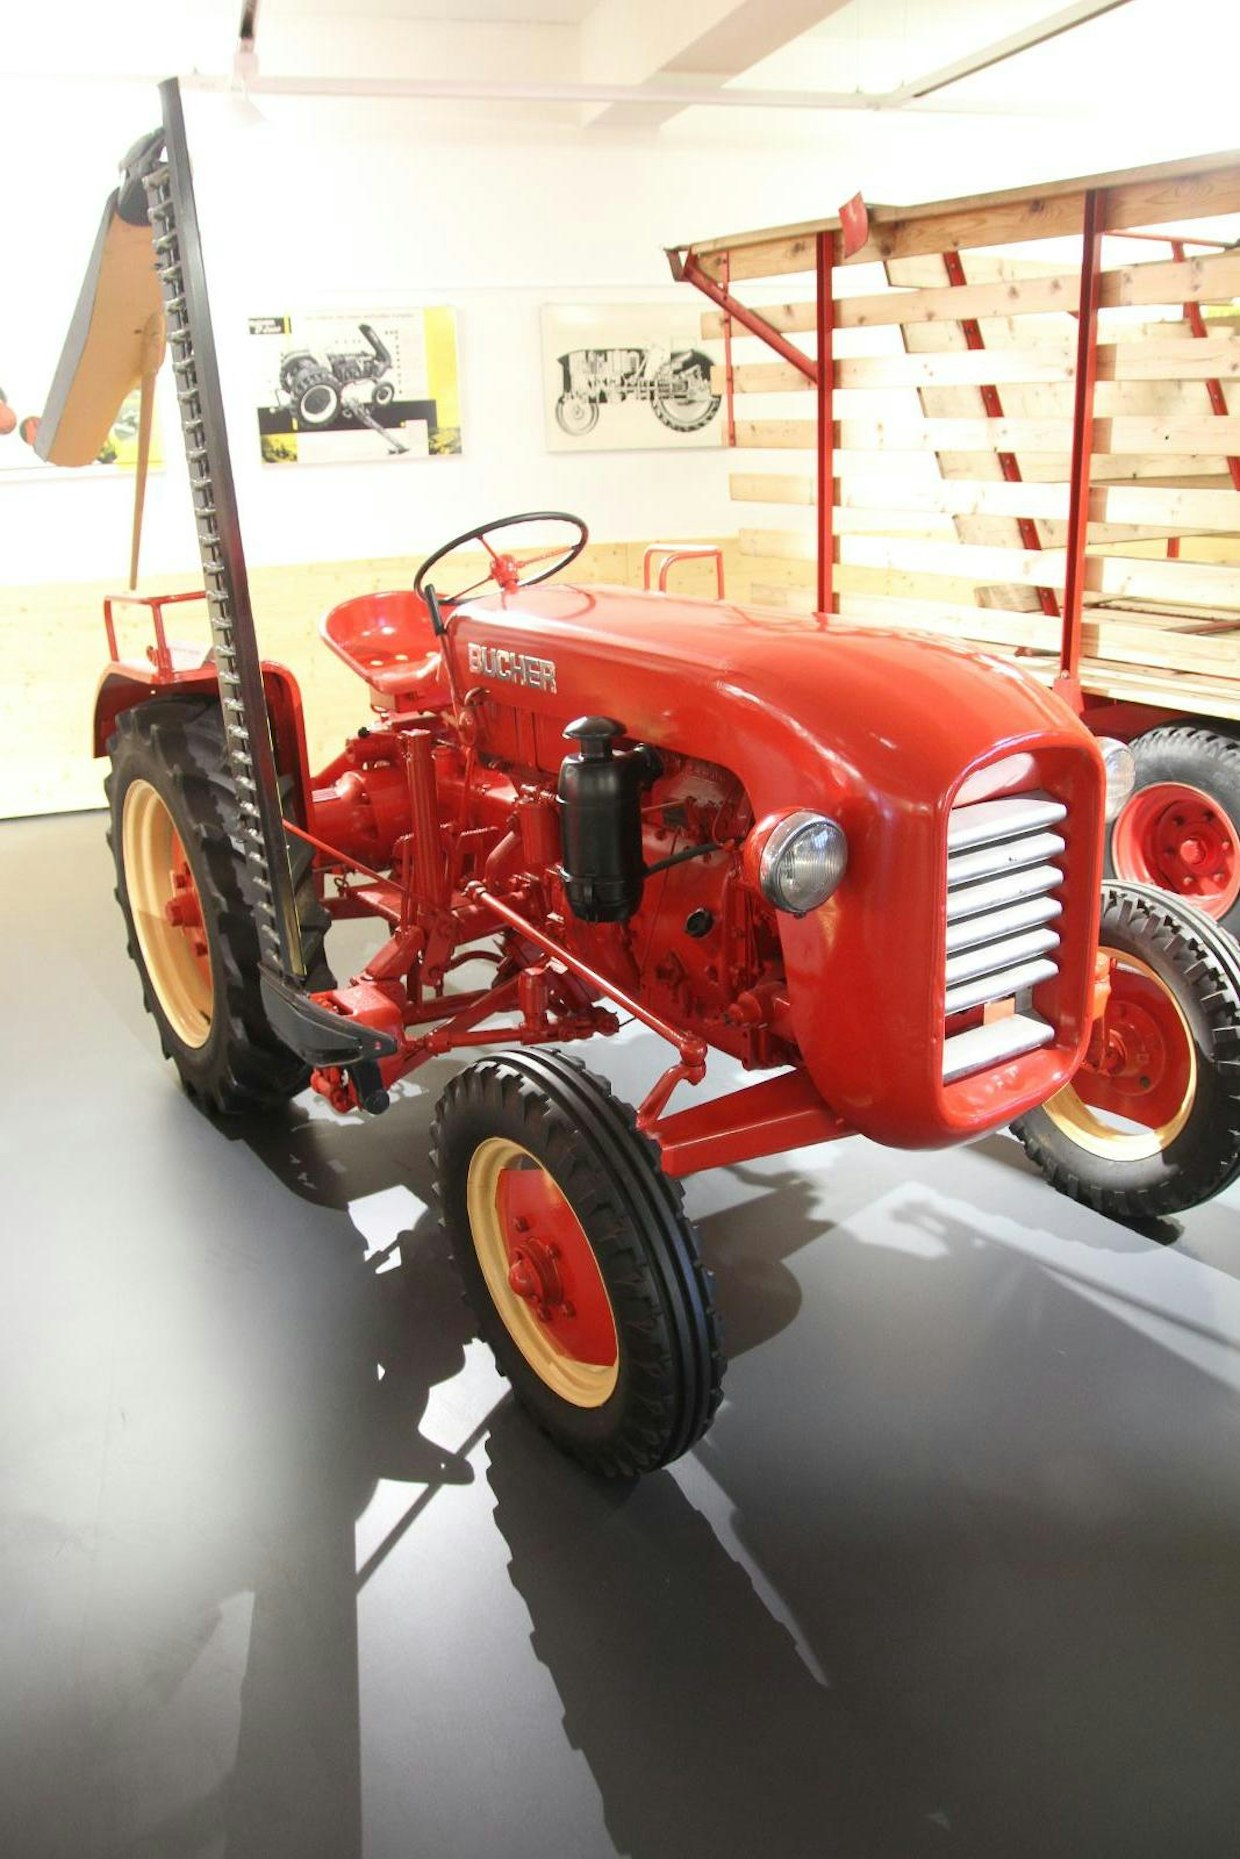 Bucher on käyttänyt traktoreissaan monen eri valmistajan moottoreita. Tässä sivuniittokoneella varustetussa D1700:ssa käytettiin sekä Mercedes OM636VIE että MWM KD 12Z -dieselmoottoreita. Myös Opelin ja Allis Chalmersin moottoreita on käytetty.